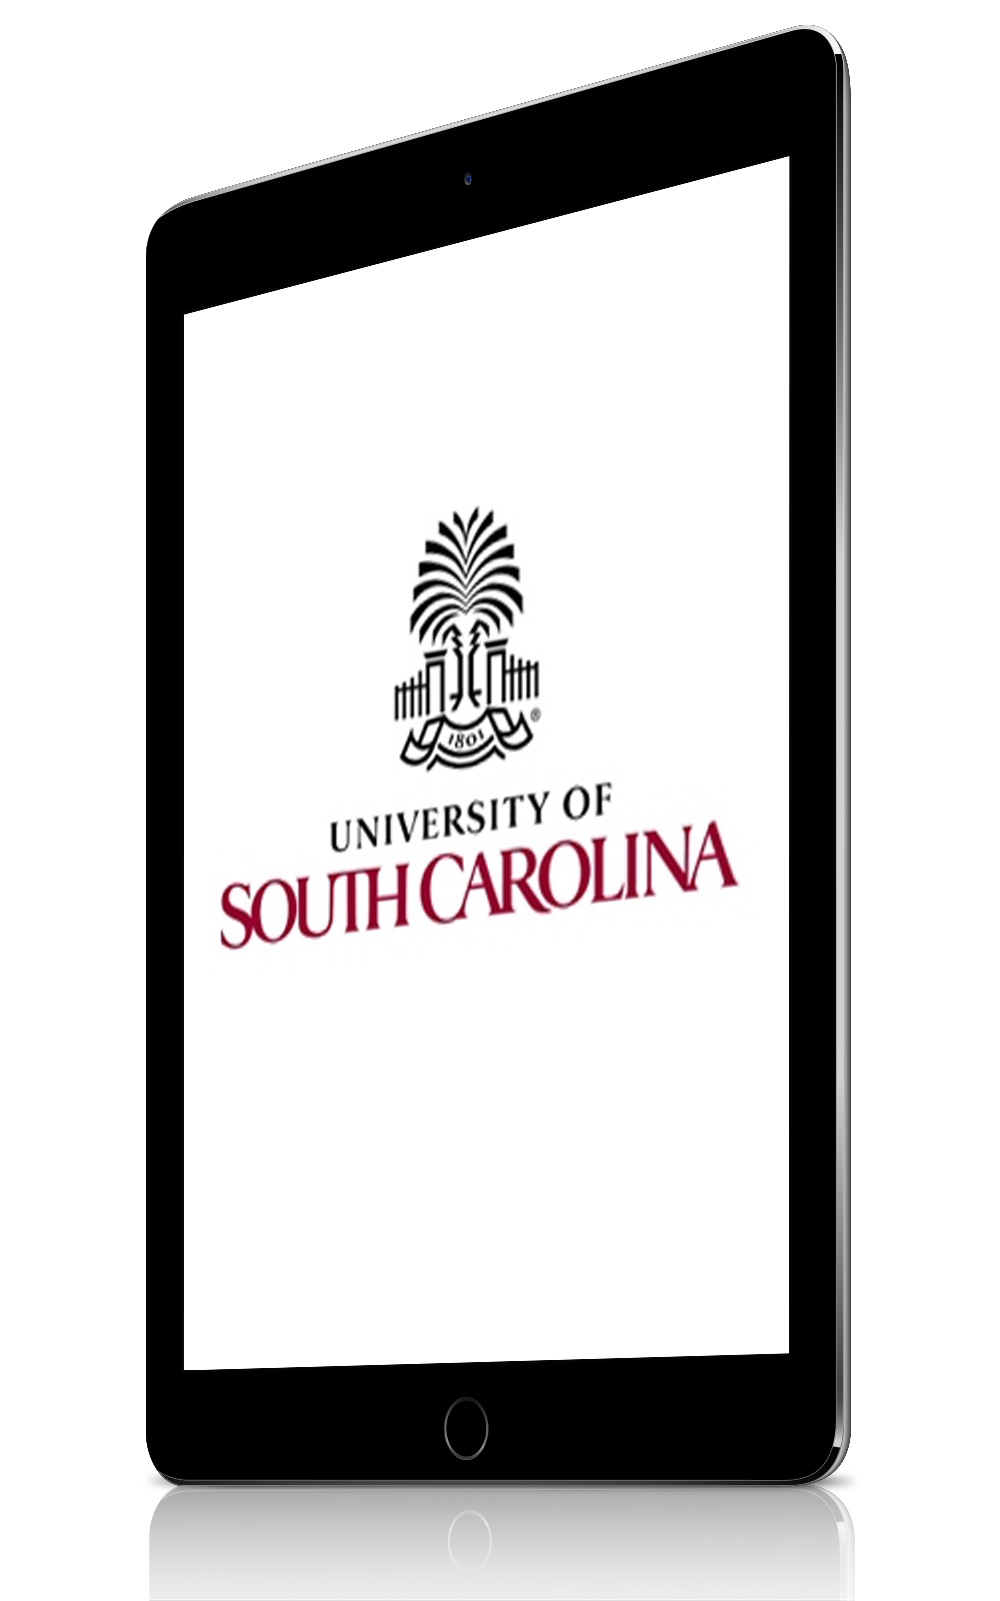 University of South Carolina logo on a tablet